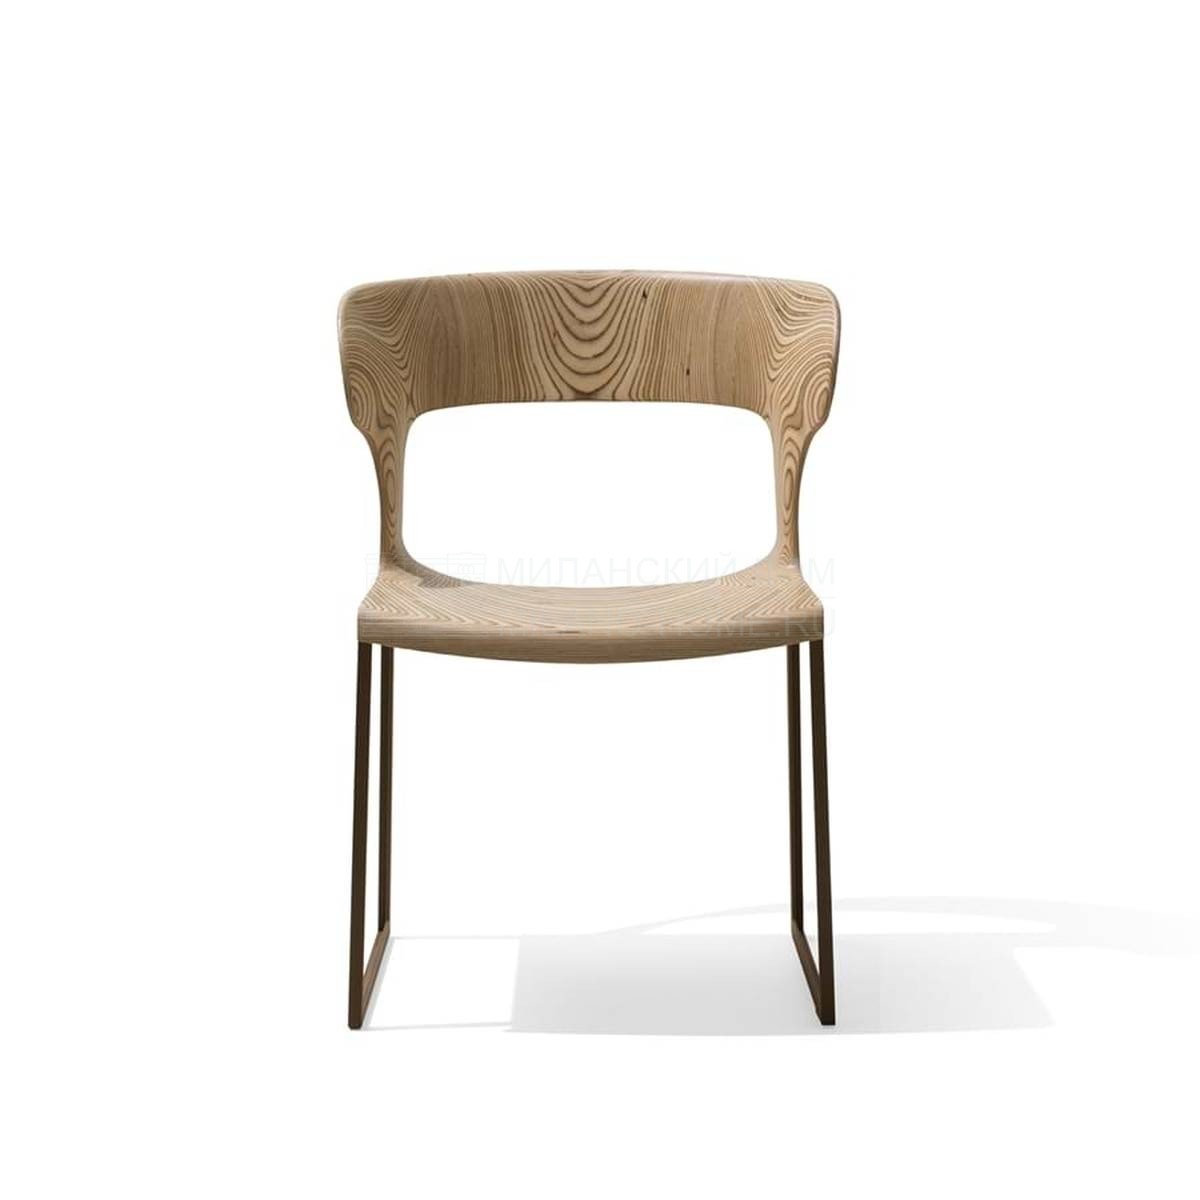 Стул Gea chair 87040 из Италии фабрики GIORGETTI